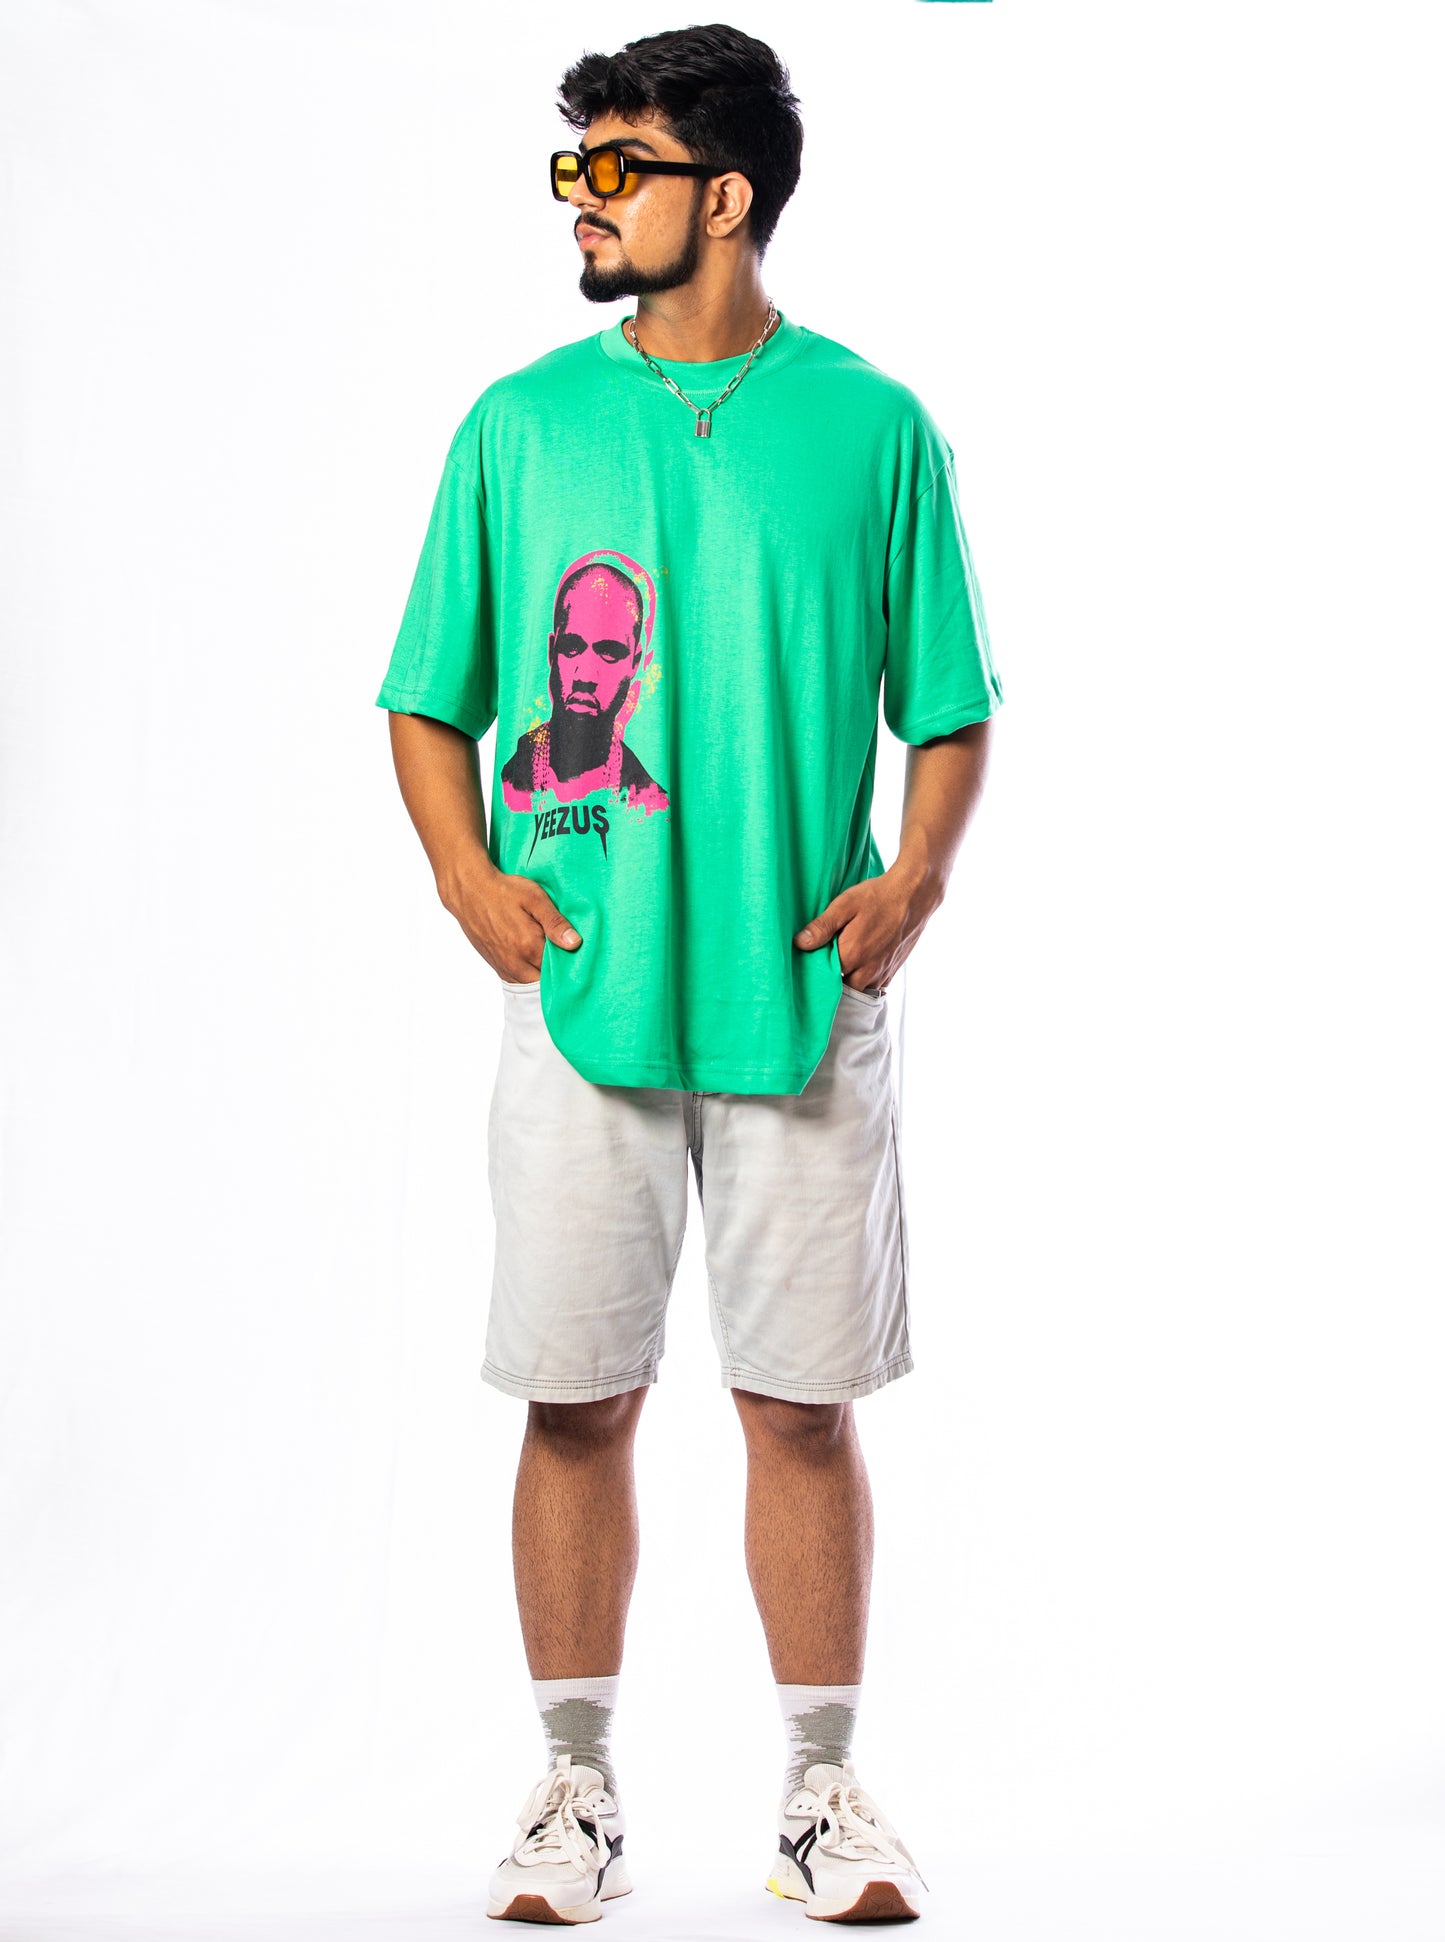 Green Yeezus T-shirt